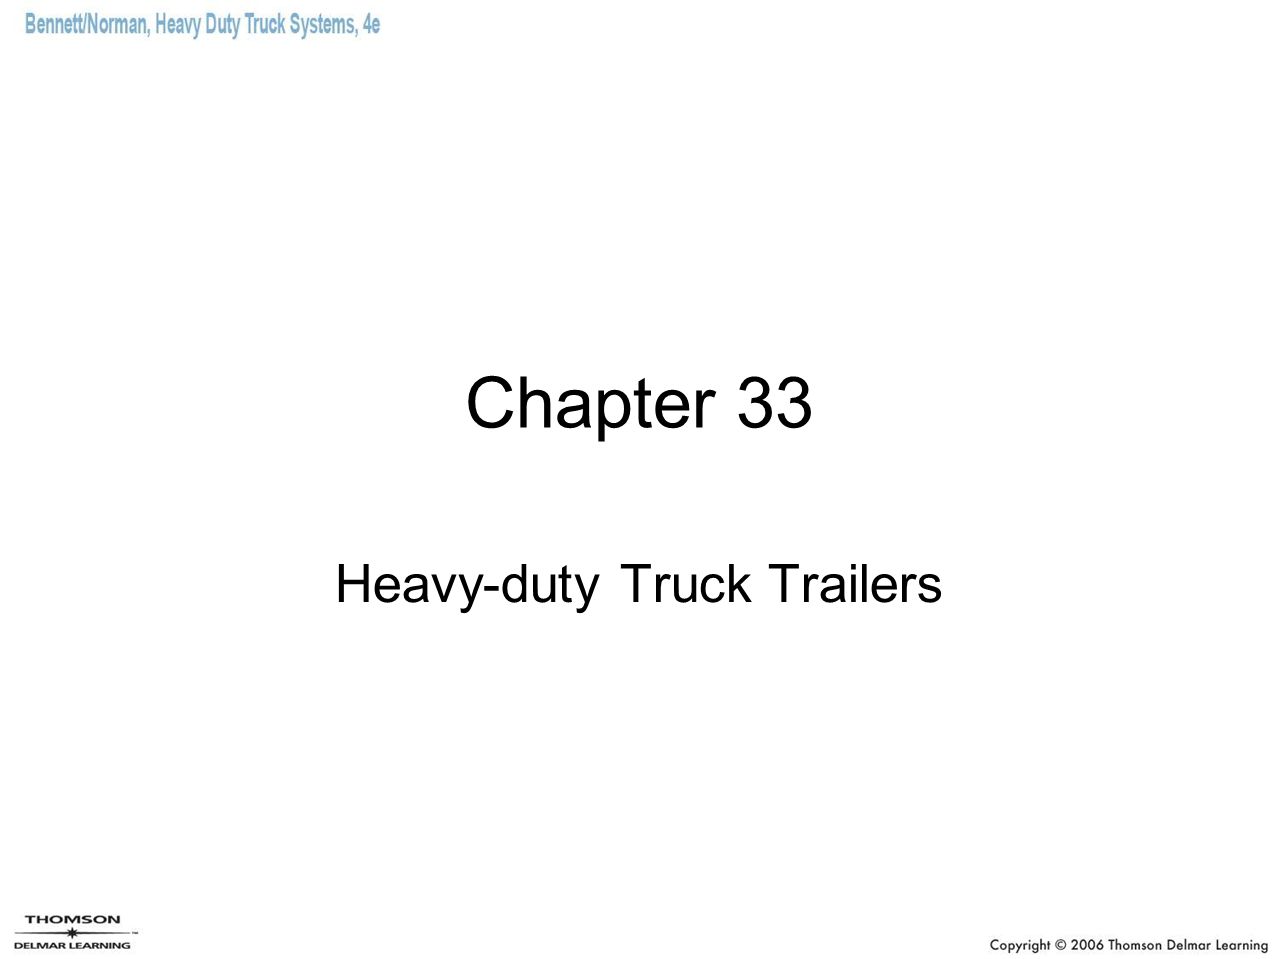 Chapter 33 Heavy-duty Truck Trailers